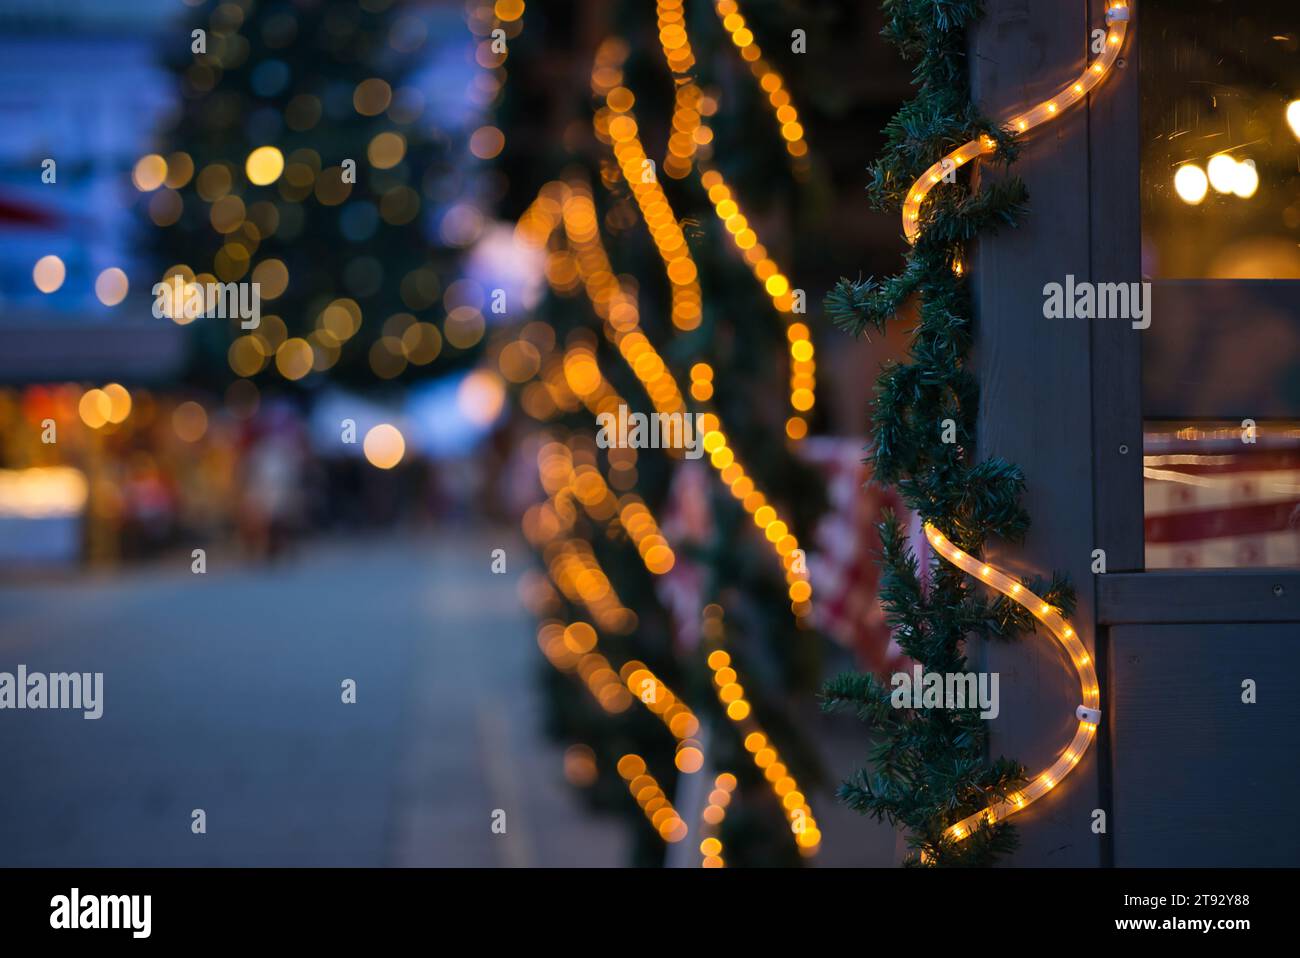 Immergiti nell'incantevole bagliore delle luci natalizie in questa immagine in formato verticale. La fotografia mostra un tubo luminoso che si snoda lungo il percorso Foto Stock